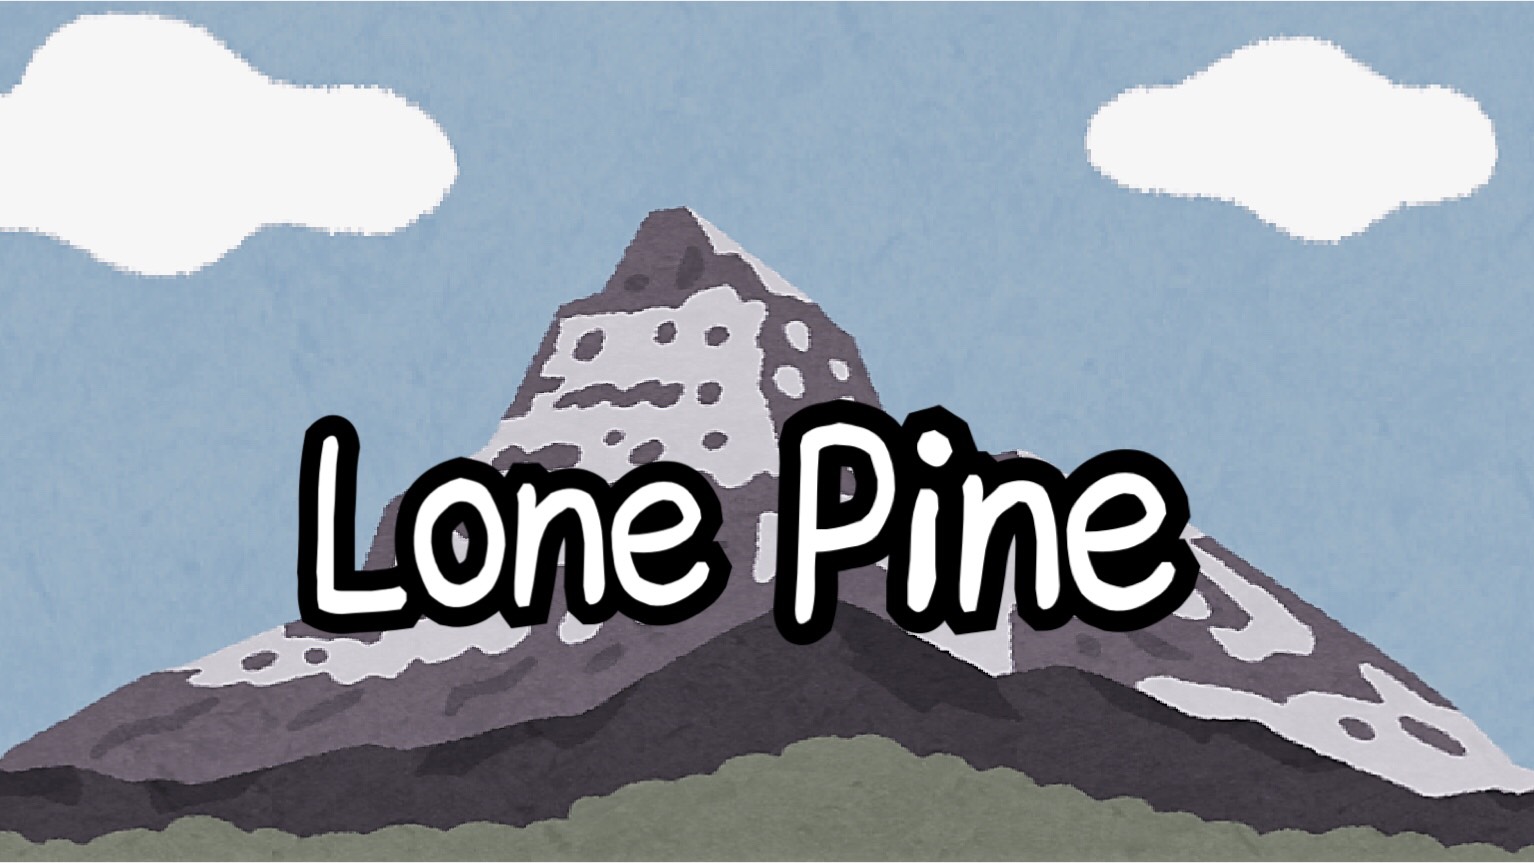 「Lone Pine」のイメージ